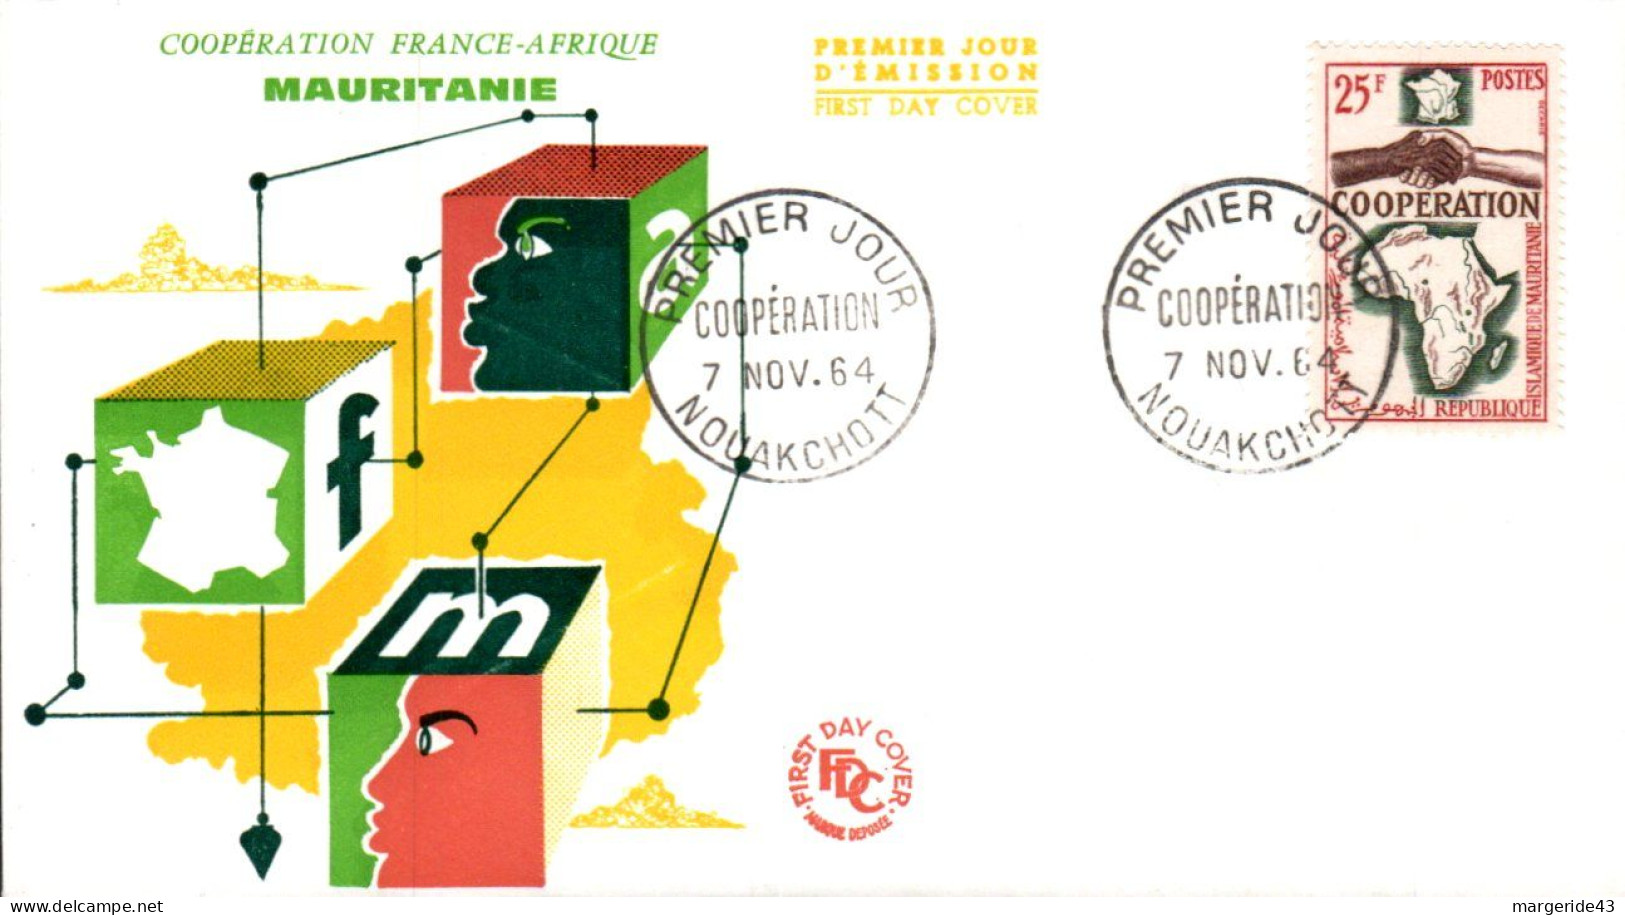 MAURITANIE  FDC 1964 COOPERATION - Mauretanien (1960-...)